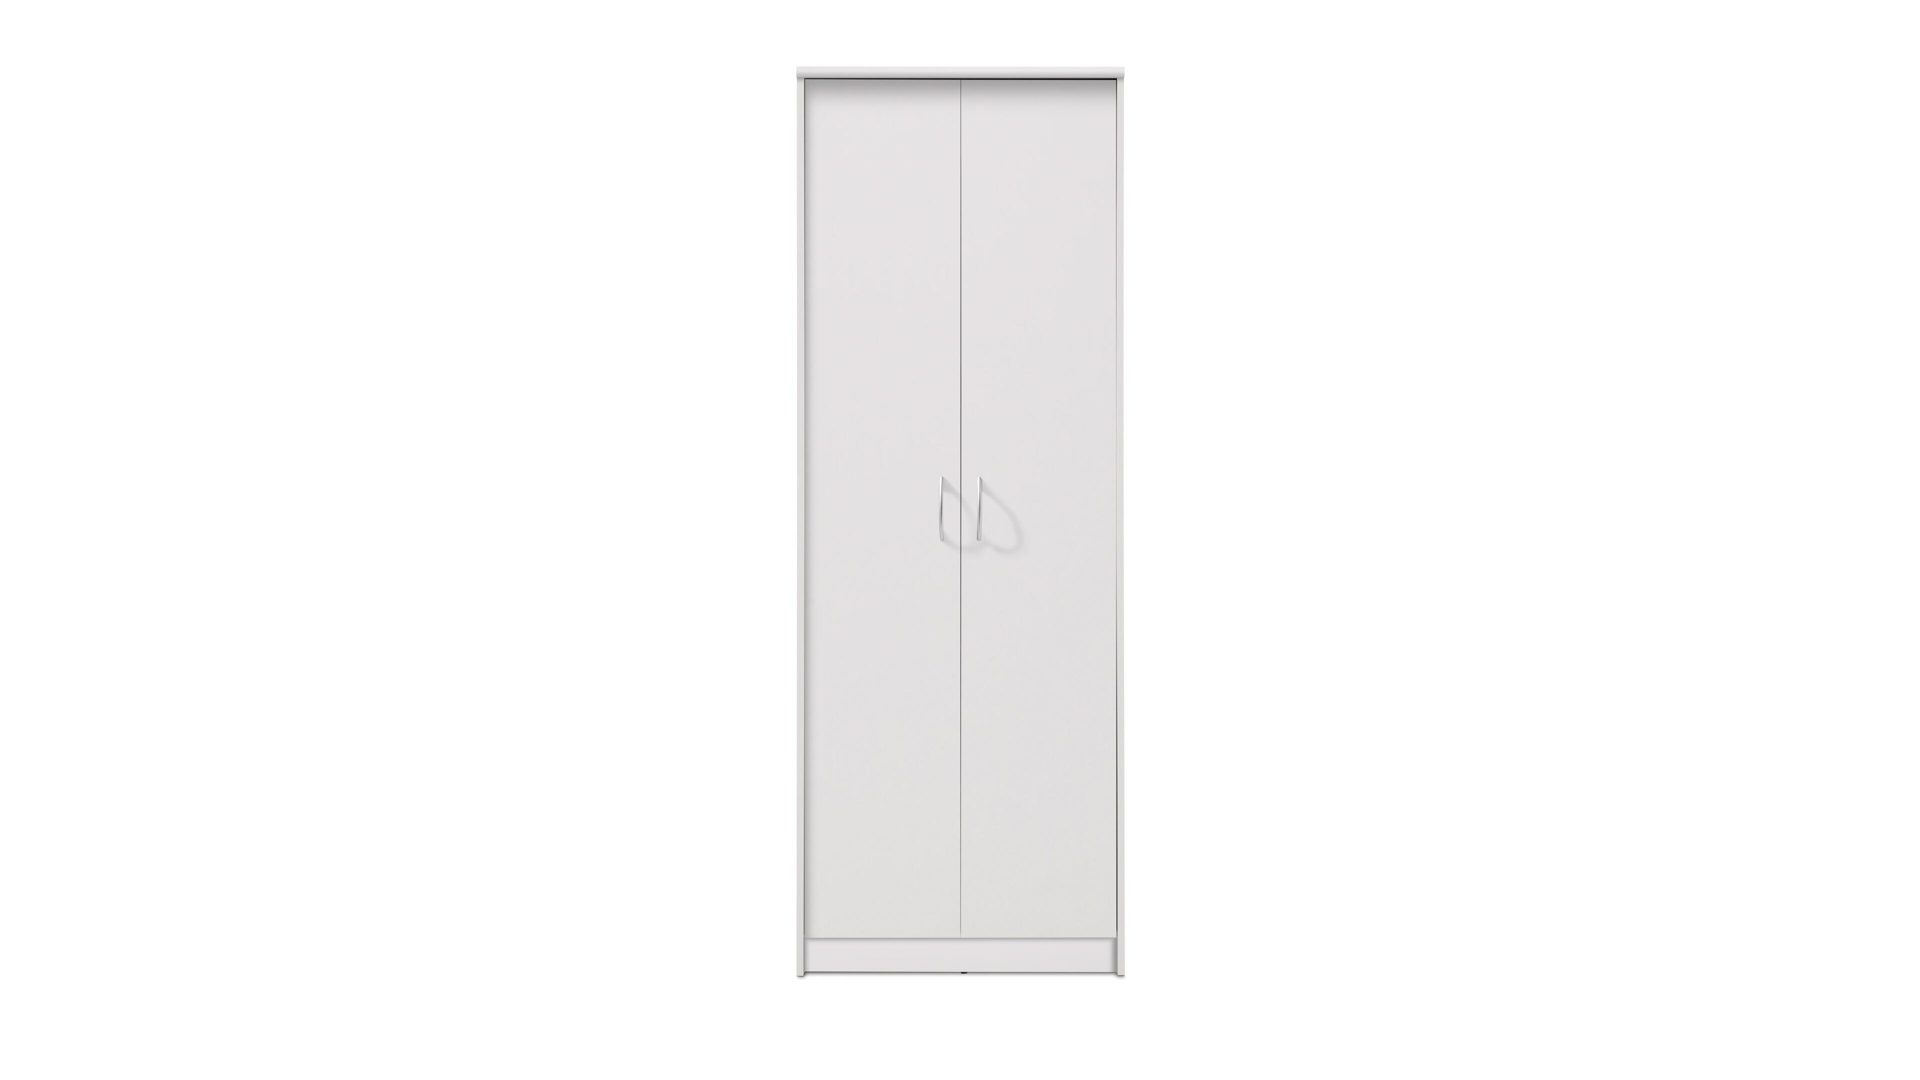 Aktenschrank Bega consult aus Holz in Weiß Aktenschrank weiße Kunststoffoberflächen – zwei Türen, Höhe ca. 198 cm